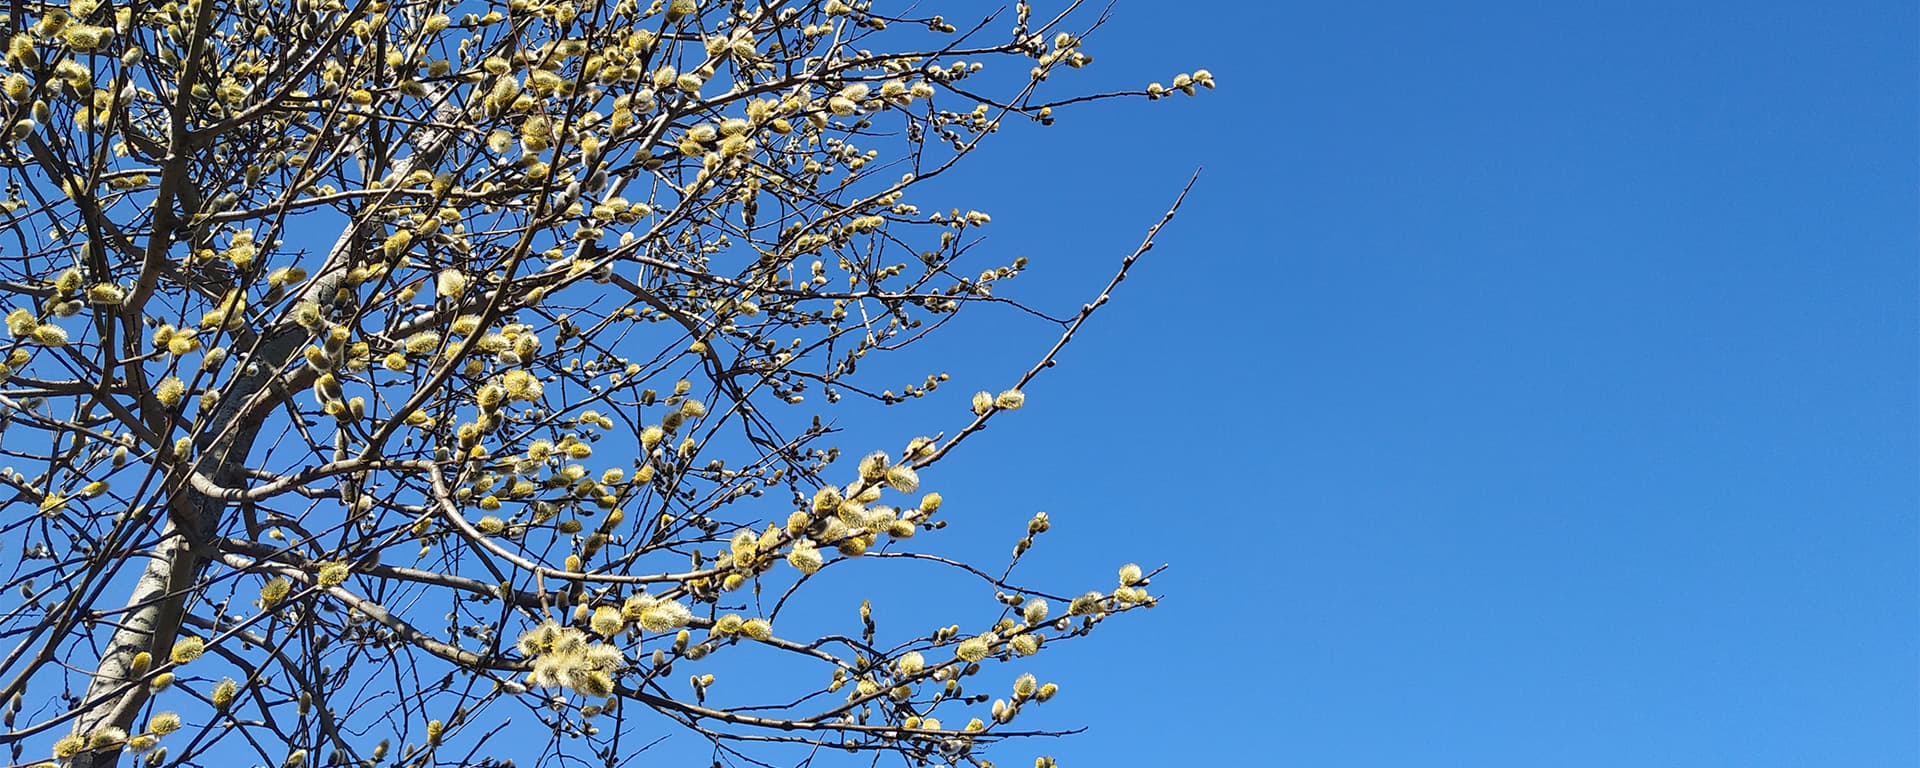 Лесная Поляна — <br>это небо, солнце и свежий воздух